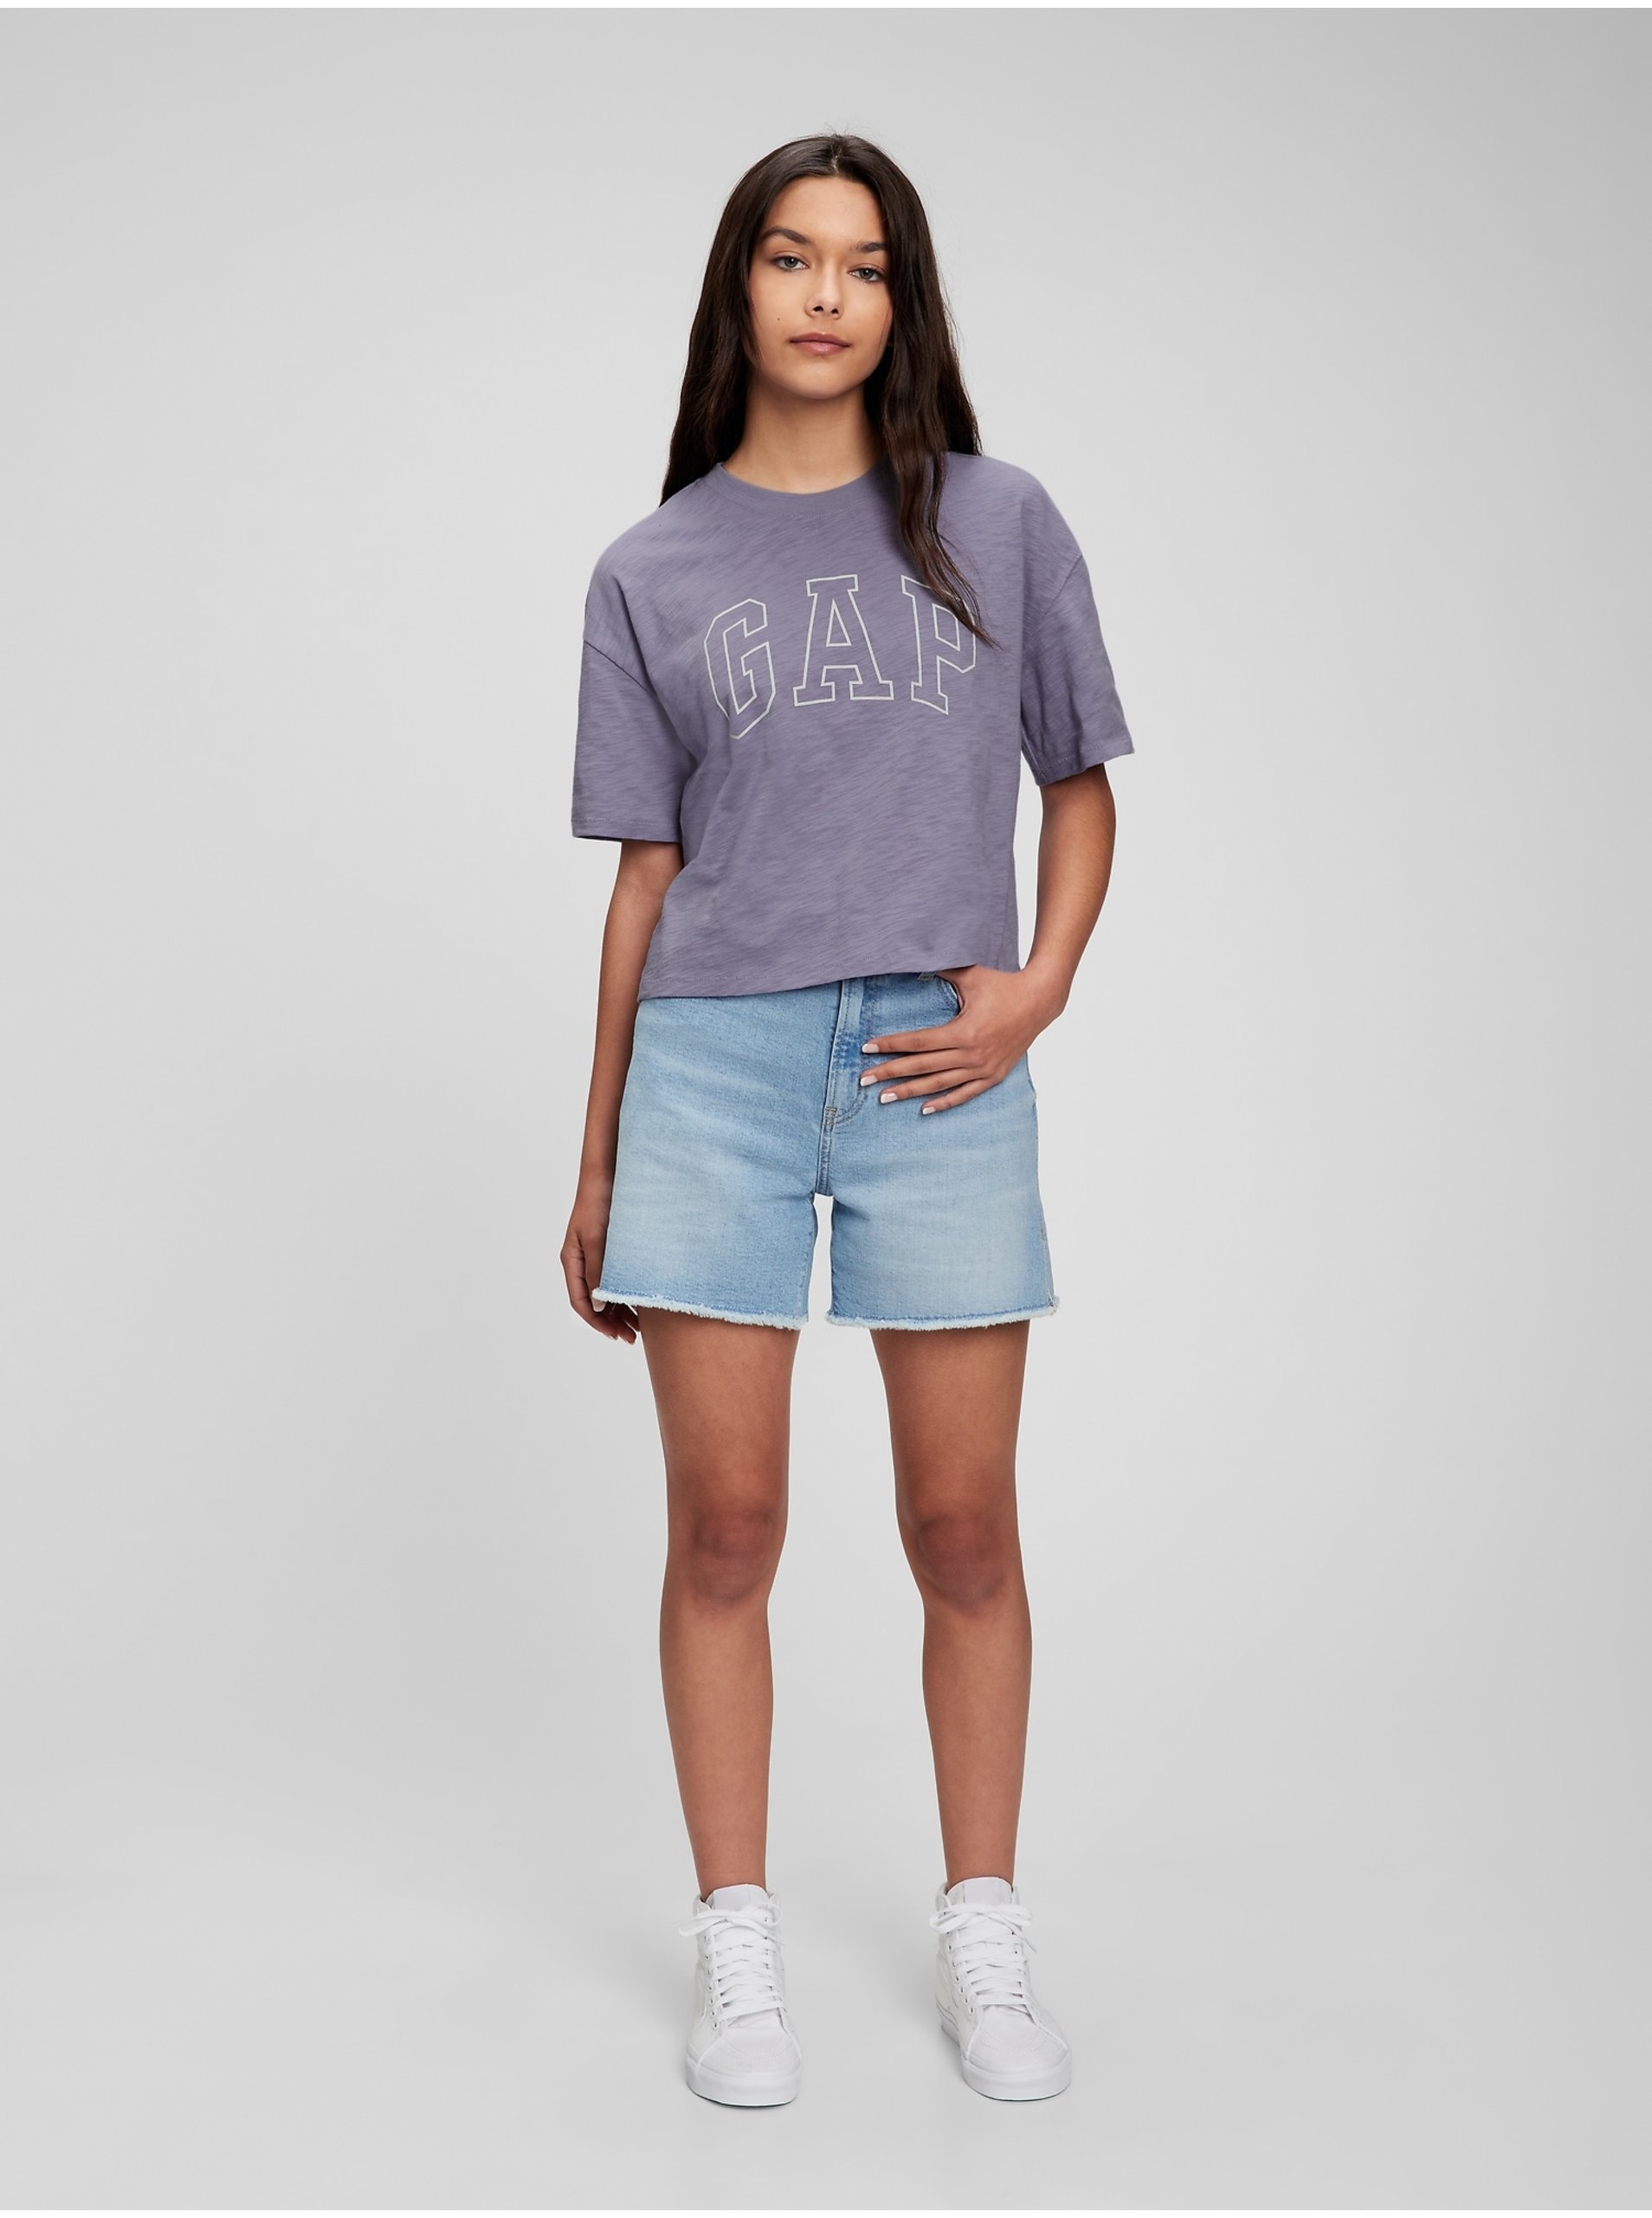 E-shop Fialové dievčenské tričko GAP Teen z organickej bavlny